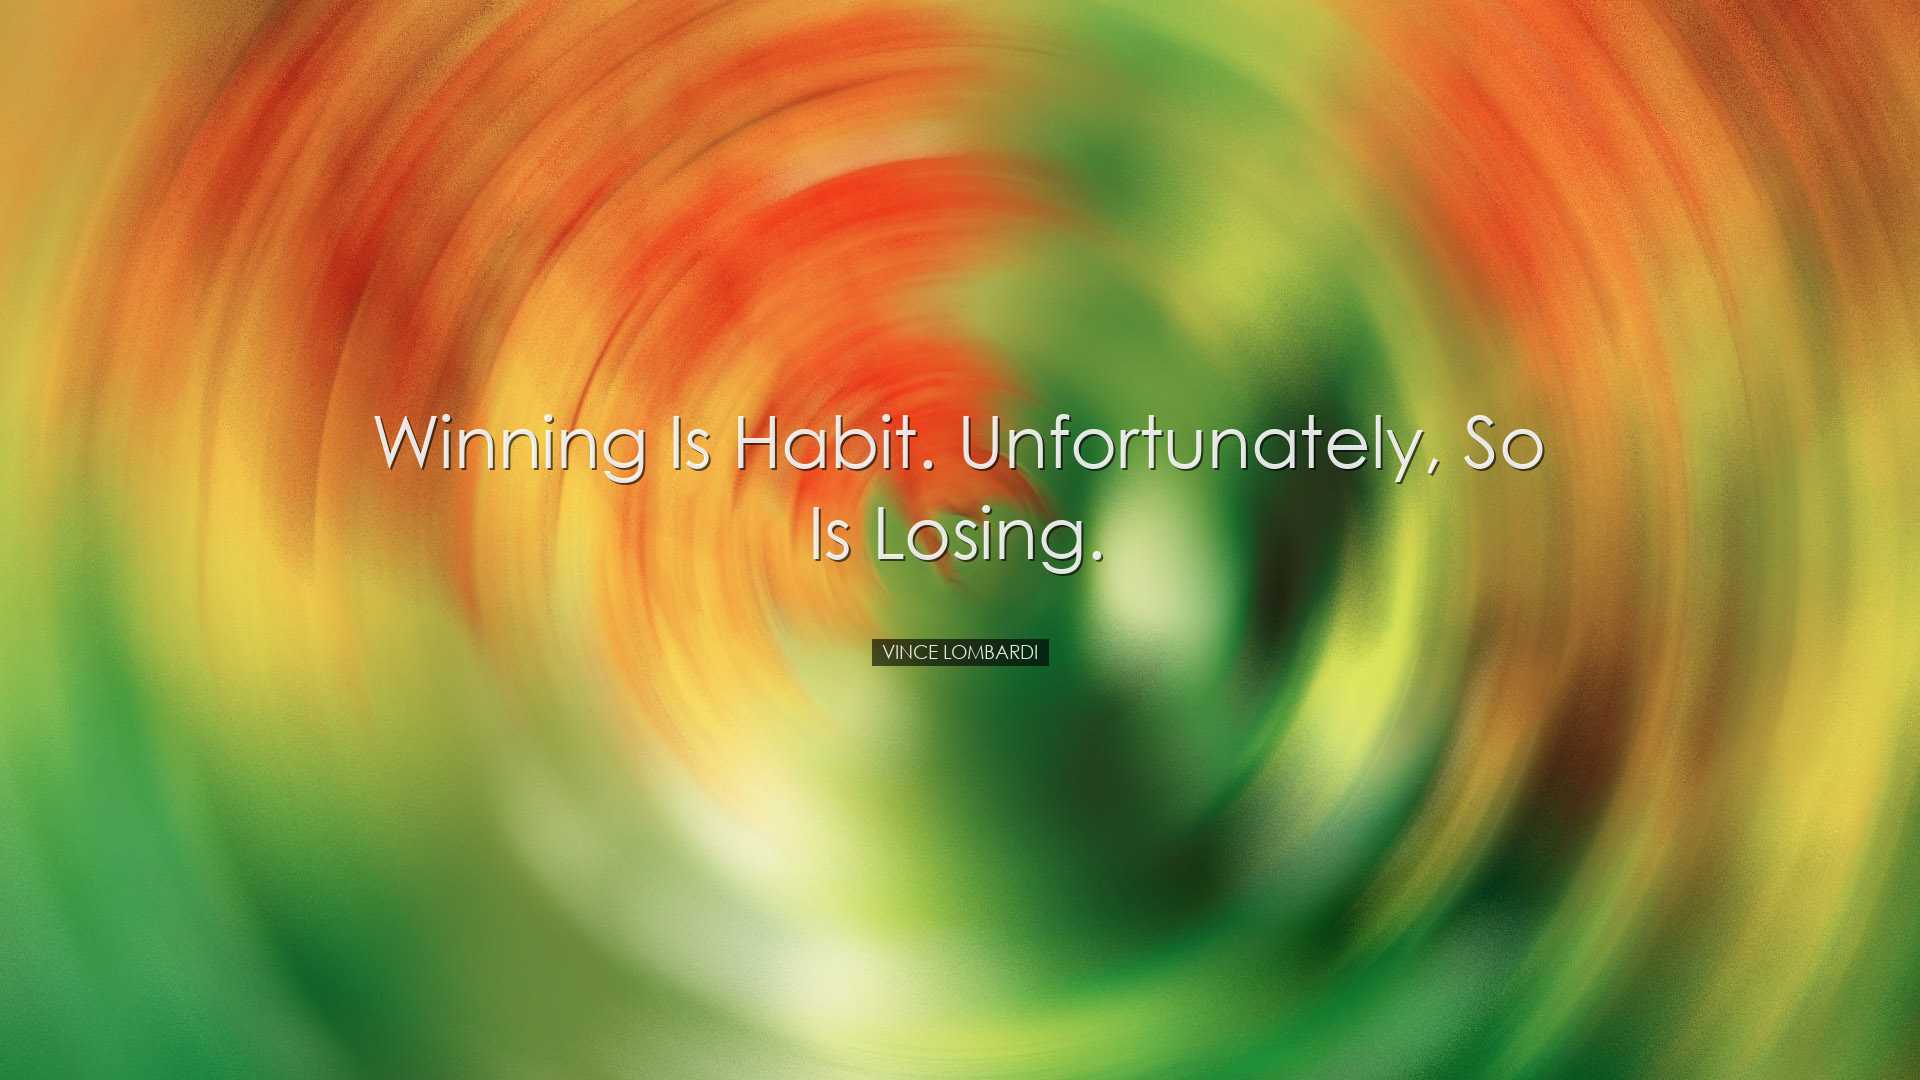 Winning is habit. Unfortunately, so is losing. - Vince Lombardi